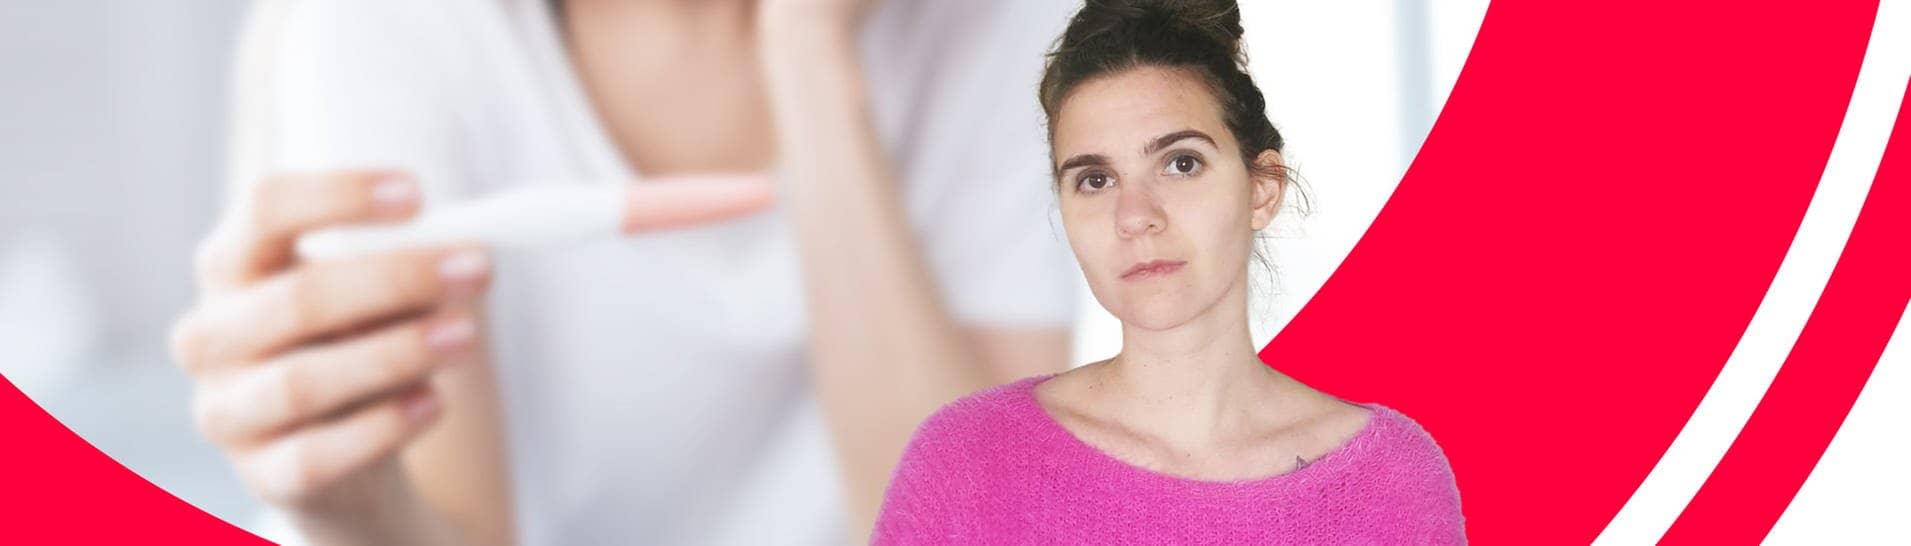 Eine Frau ist nicht glücklich über ihren positiven Schwangerschaftstest (Foto: Adobe Stock/privat)